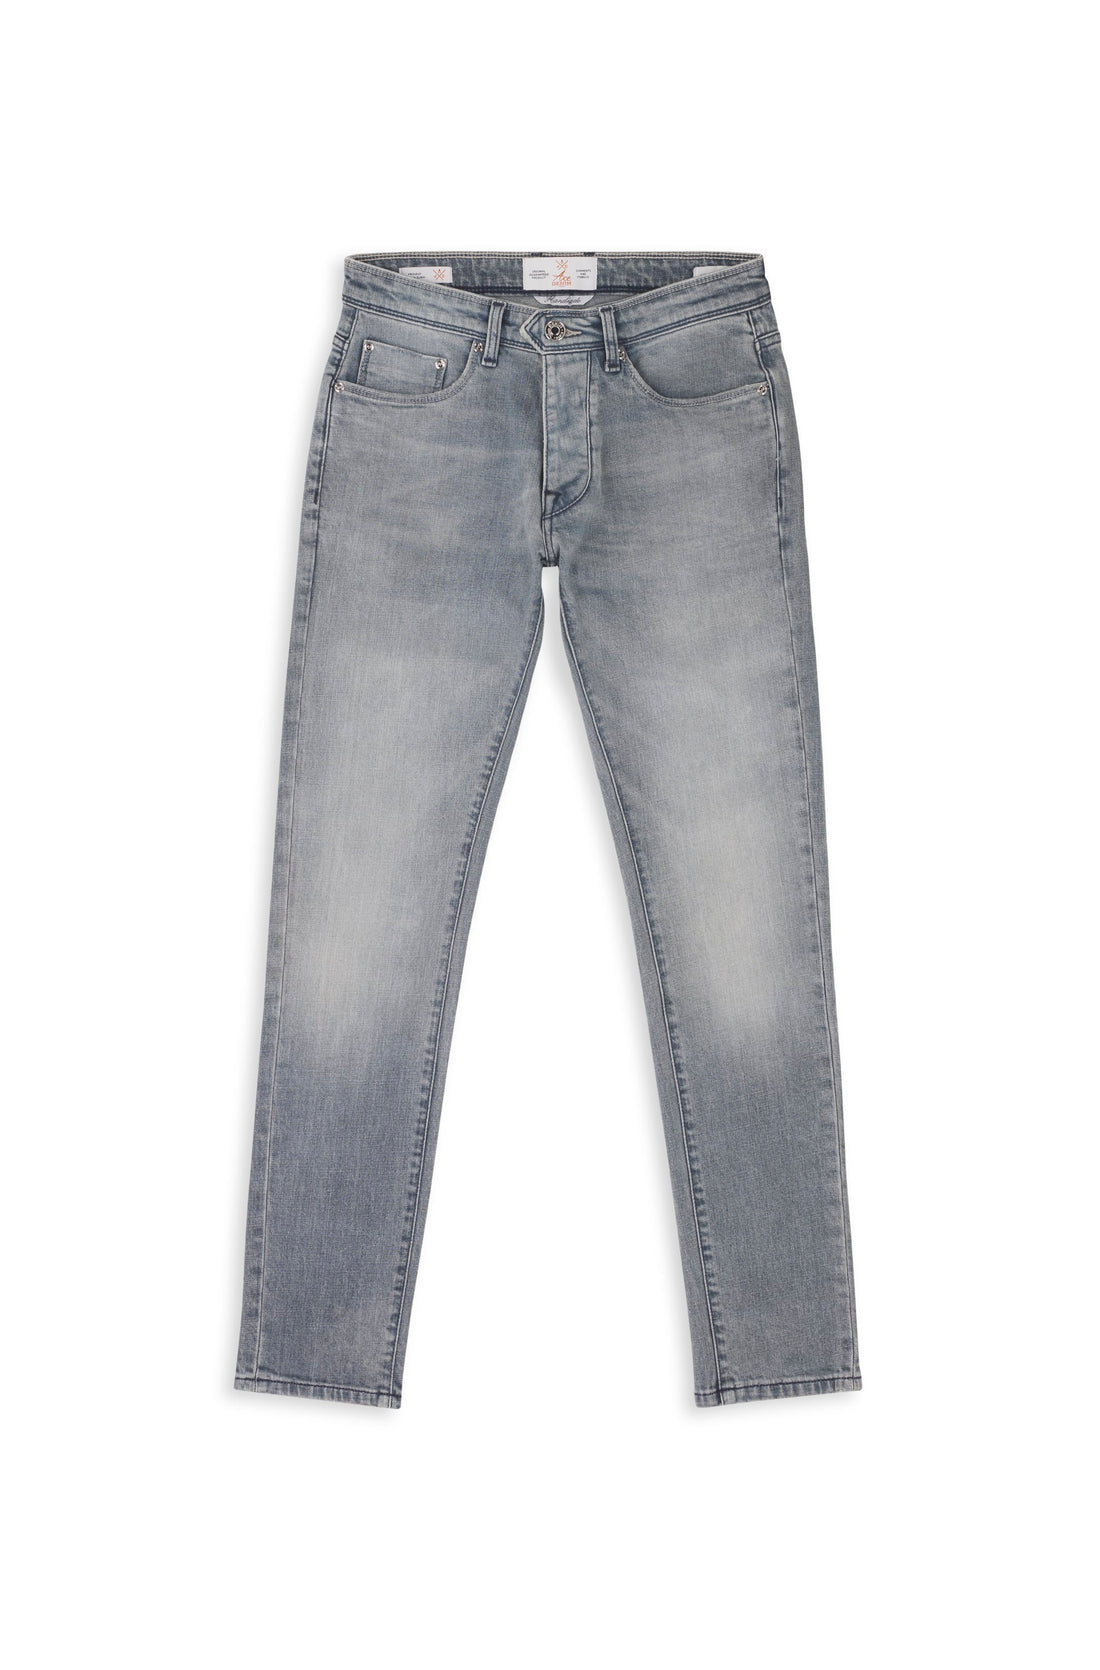 jeans homme gris bleu coupe slim stretch